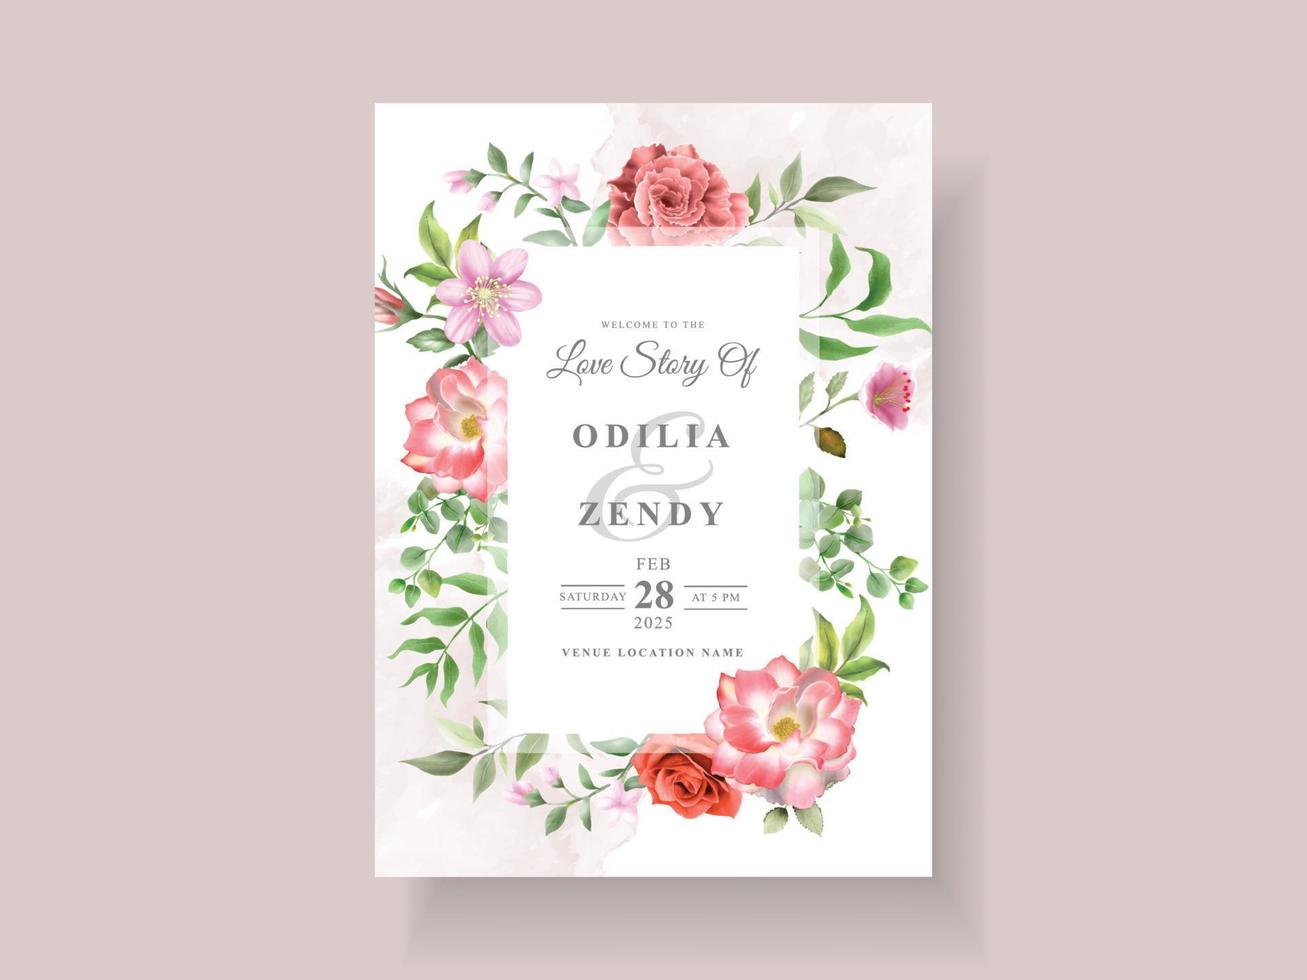 elegante Hochzeitseinladungsschablone mit schönem Blumenmuster vektor